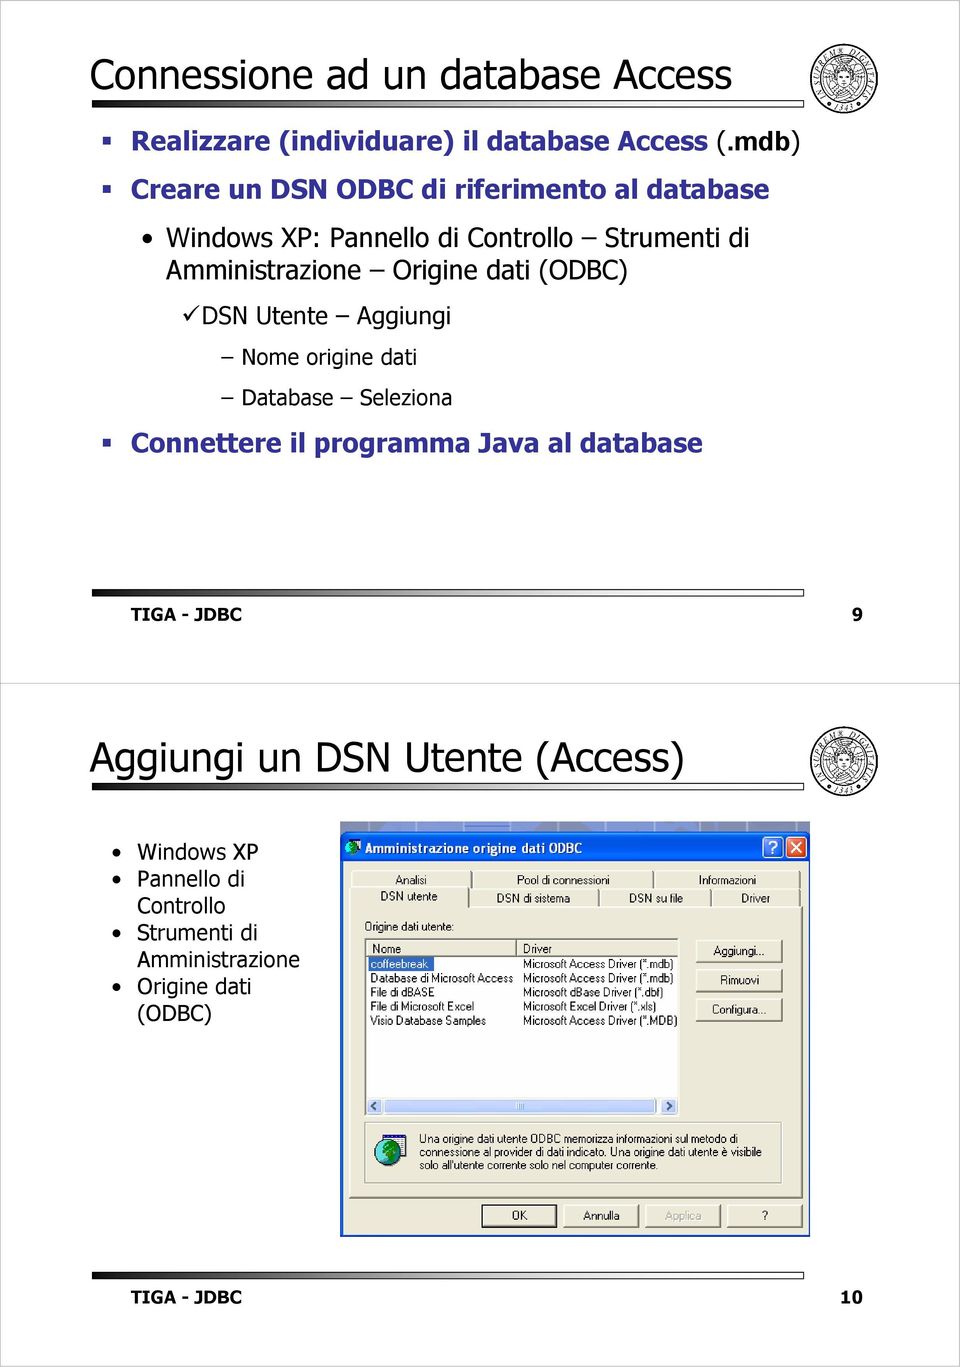 Amministrazione Origine dati (ODBC) DSN Utente Aggiungi Nome origine dati Database Seleziona Connettere